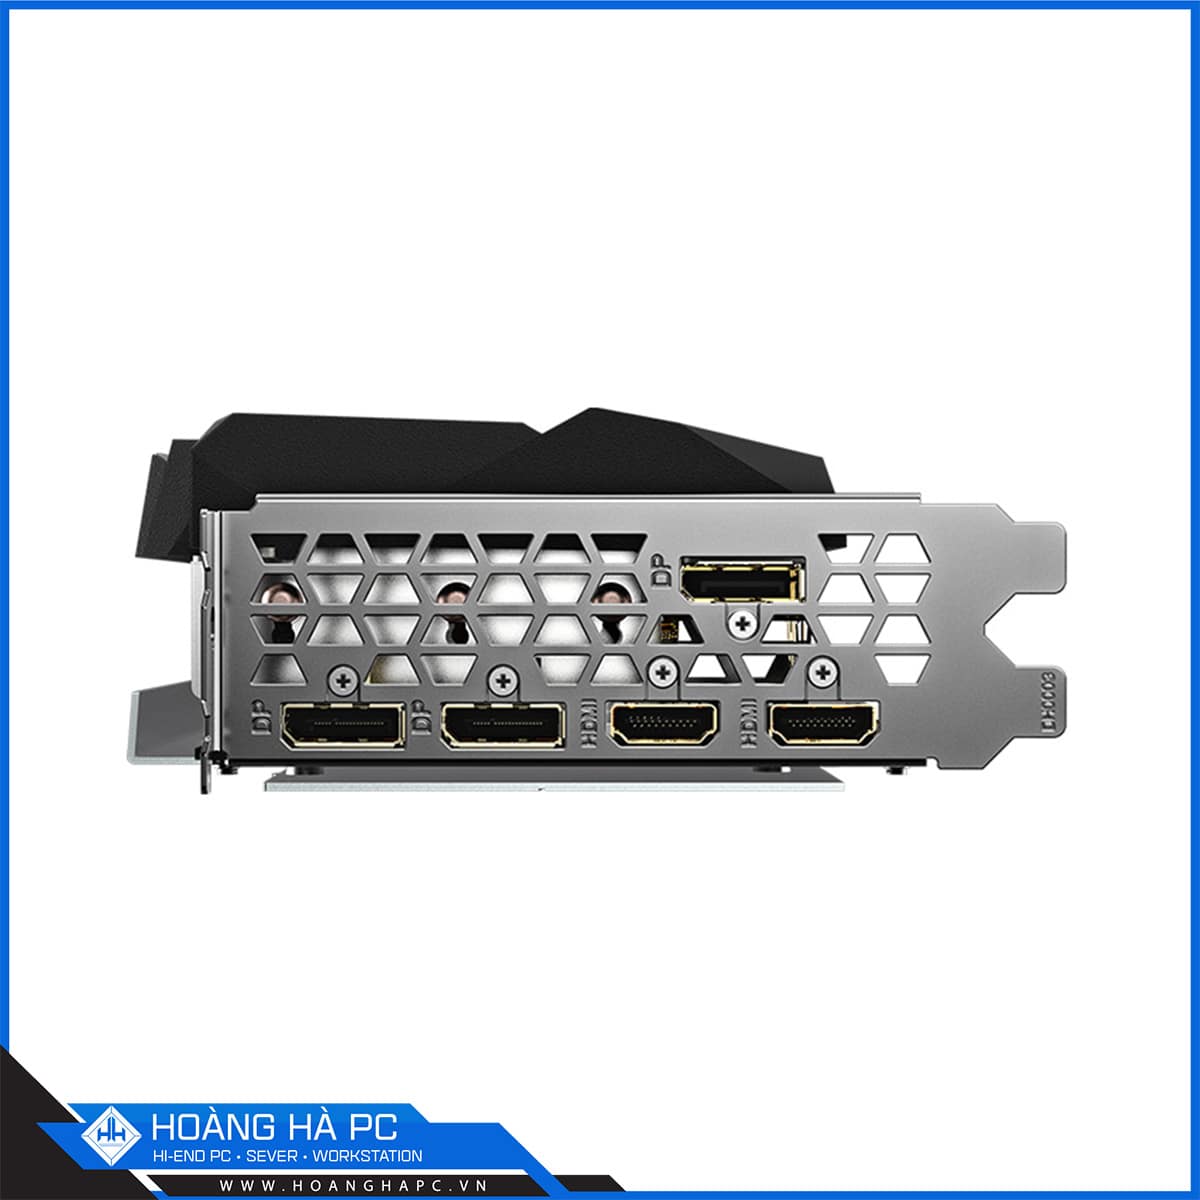 VGA Gigabyte RTX 3080 Ti GAMING OC 12G (12GB GDDR6X, 384-bit, HDMI +DP, 2x8-pin)